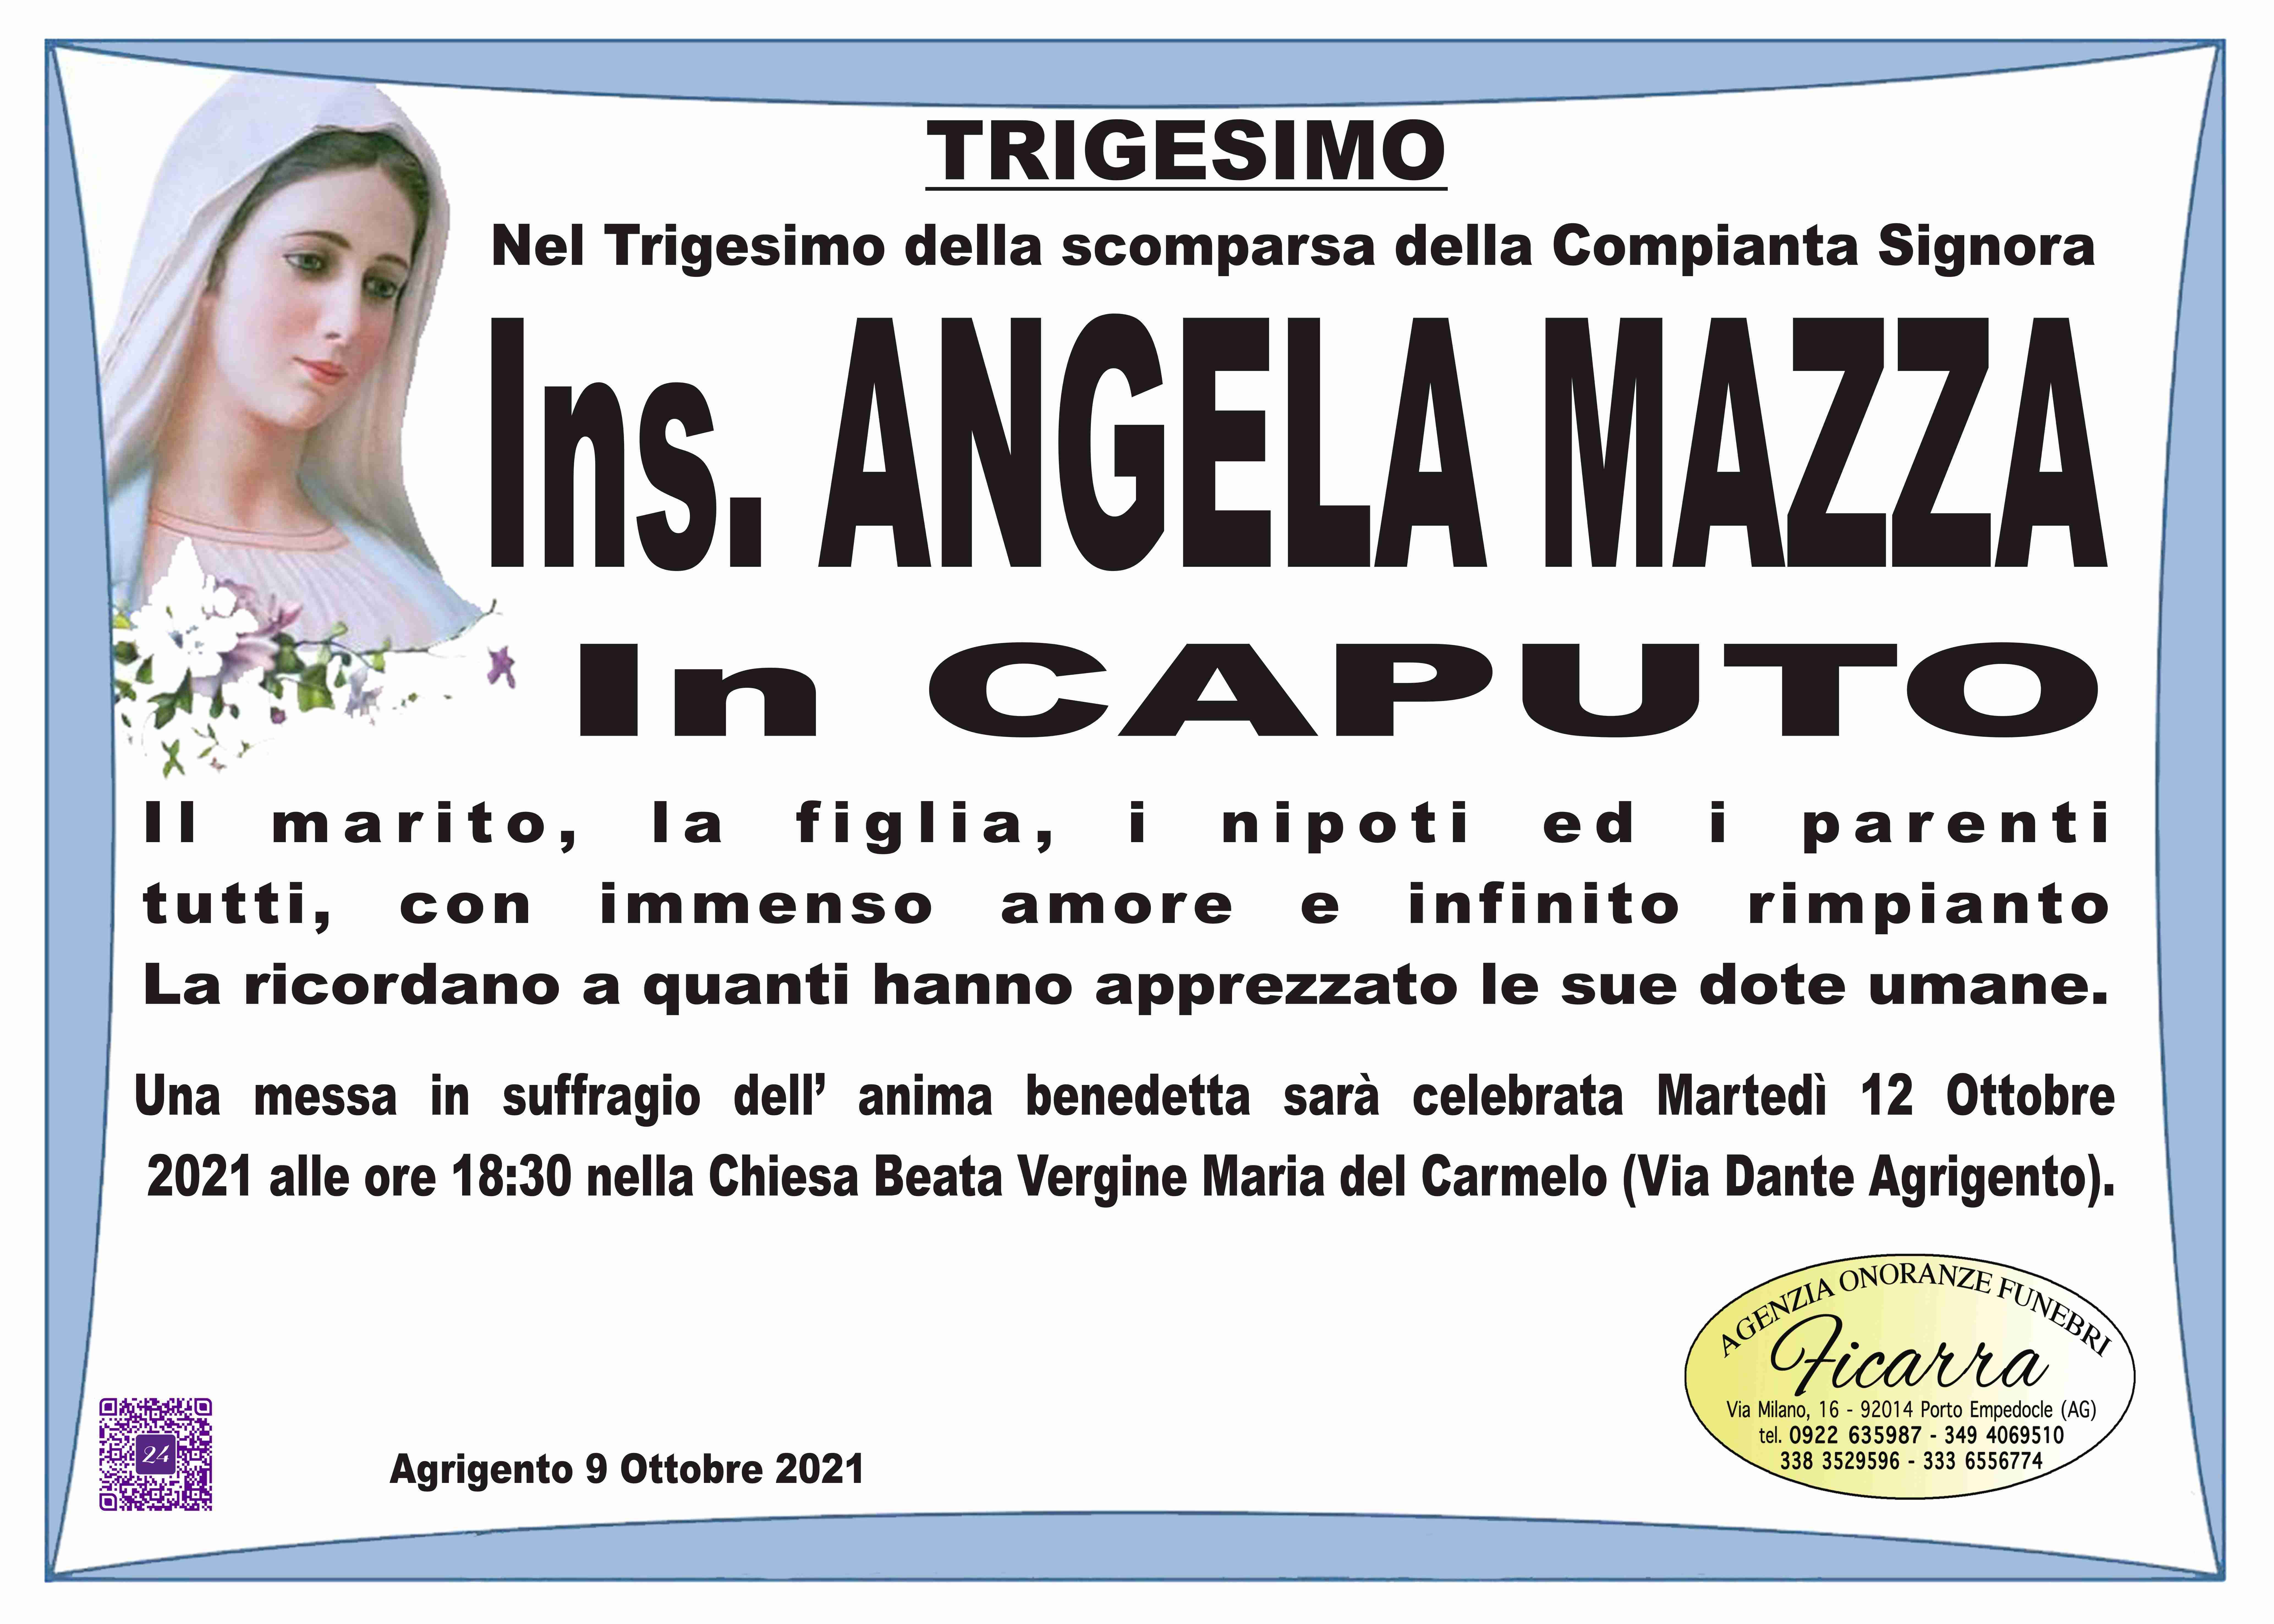 Angela Mazza